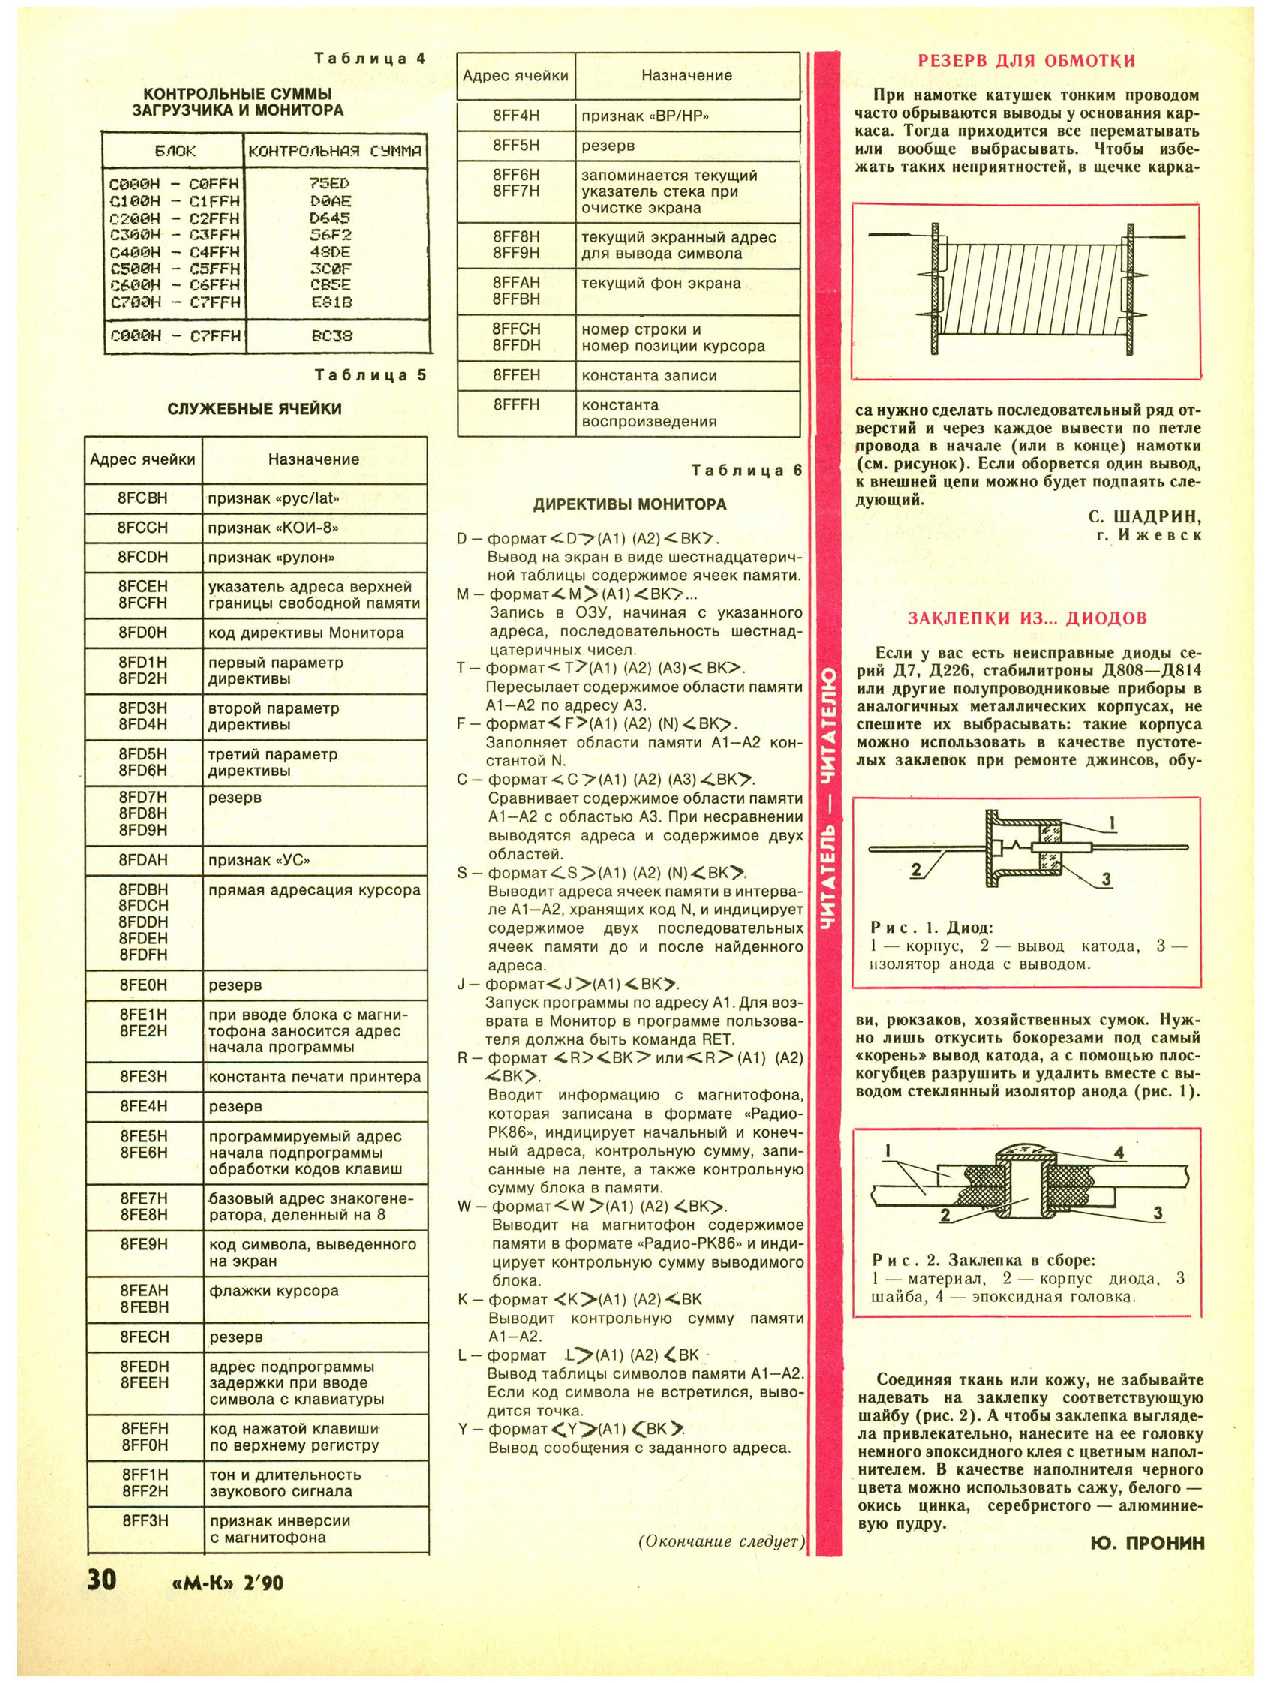 МК 2, 1990, 30 c.